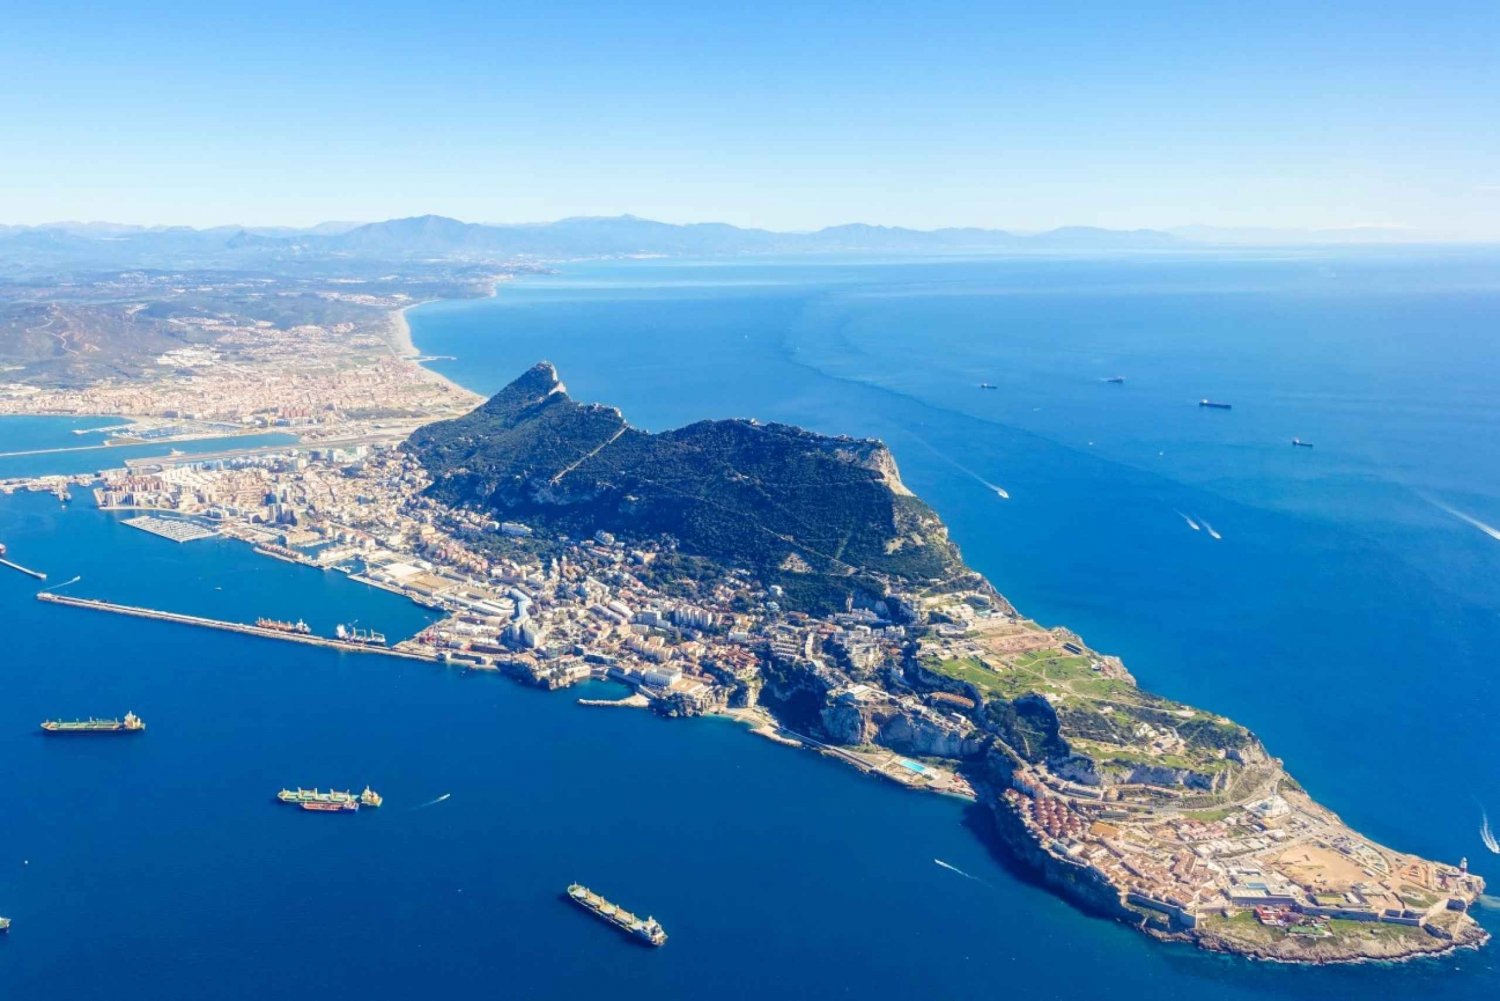 Cádiz/El Puerto/Jerez: Gibraltarin nähtävyyksien päiväretki